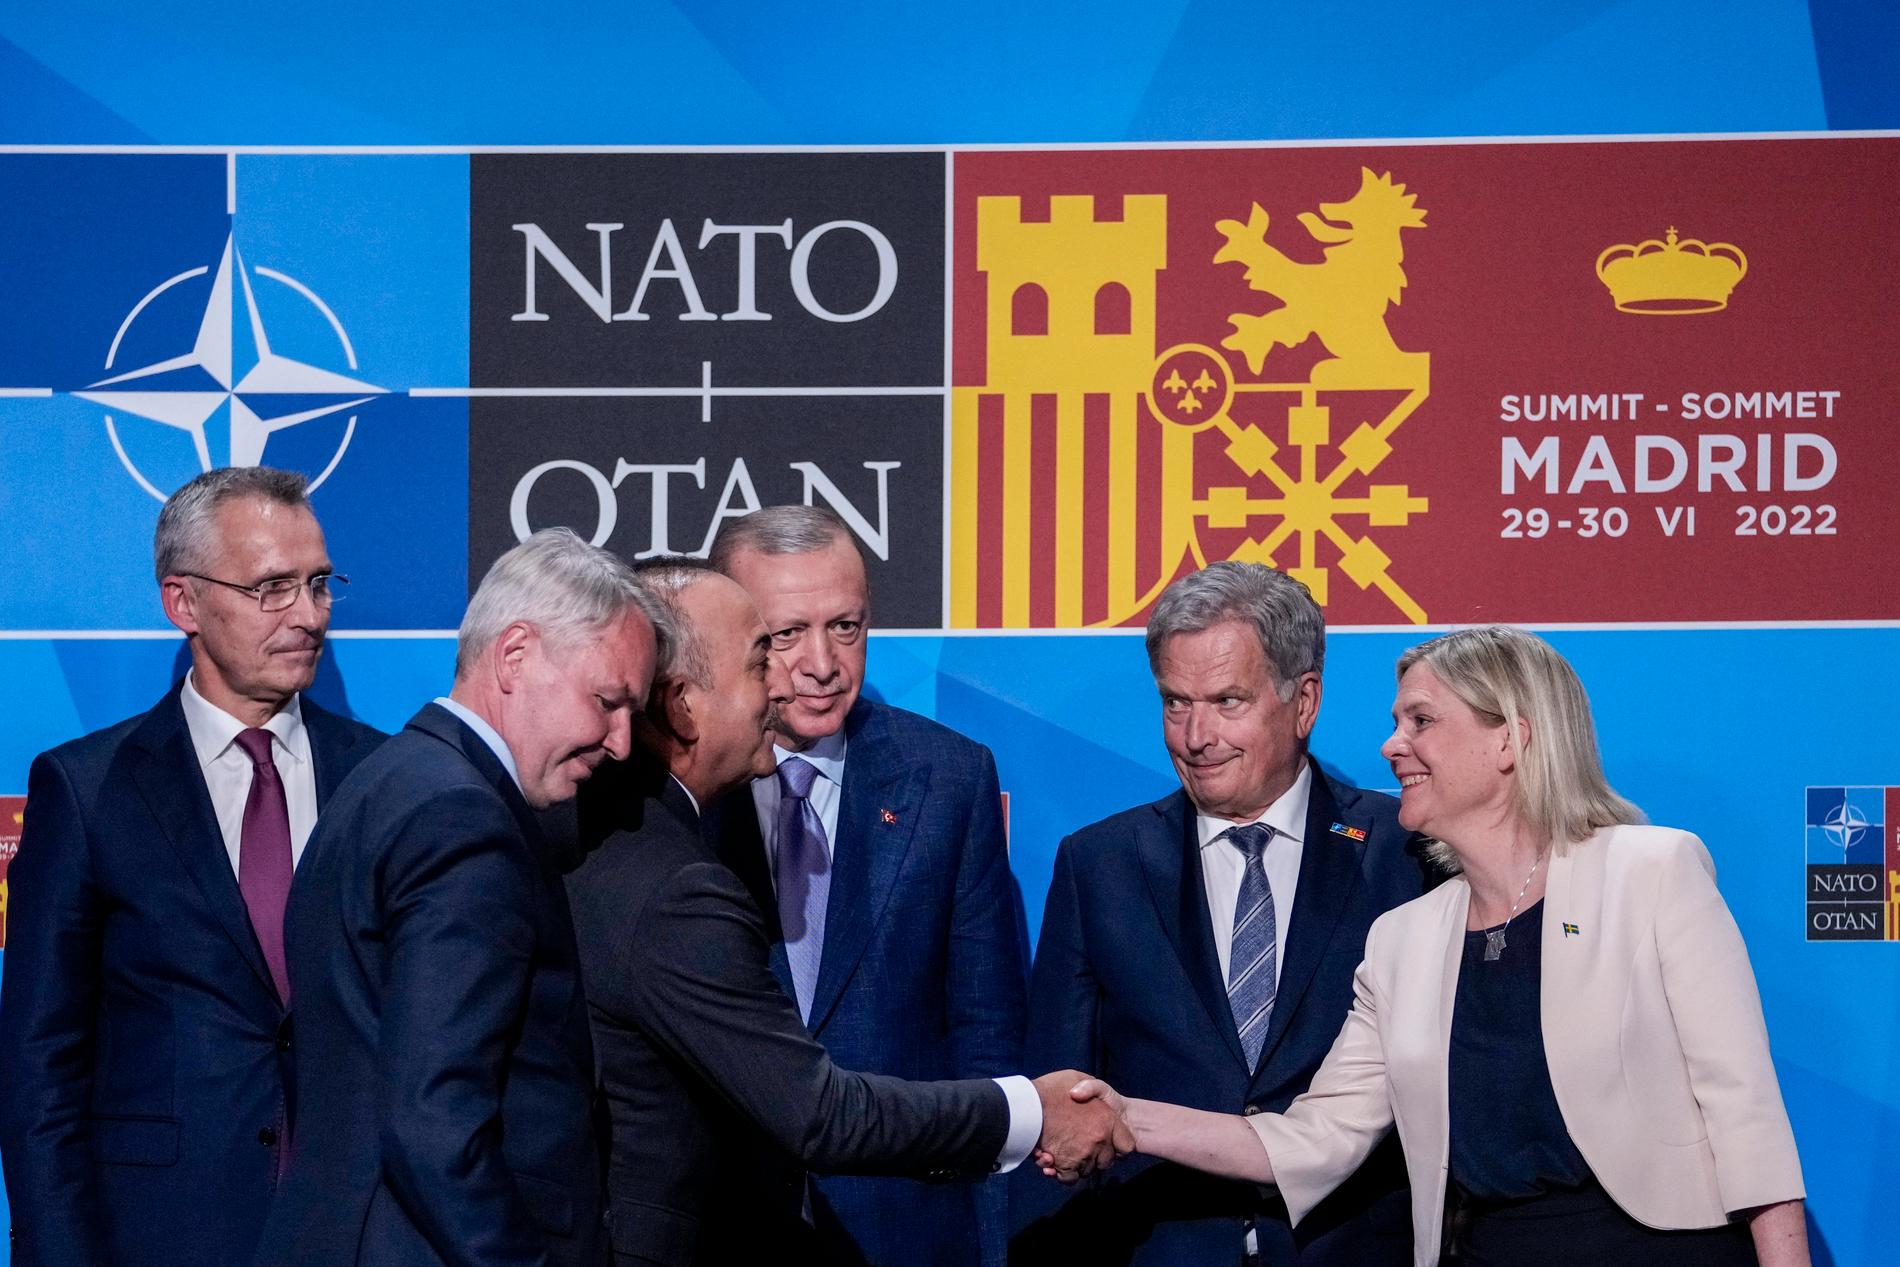 Sverige har nu fått så kallad "invitee"-status i Nato – men för ett fullständigt medlemskap måste alla länders parlament ratificera alla ansökningar.